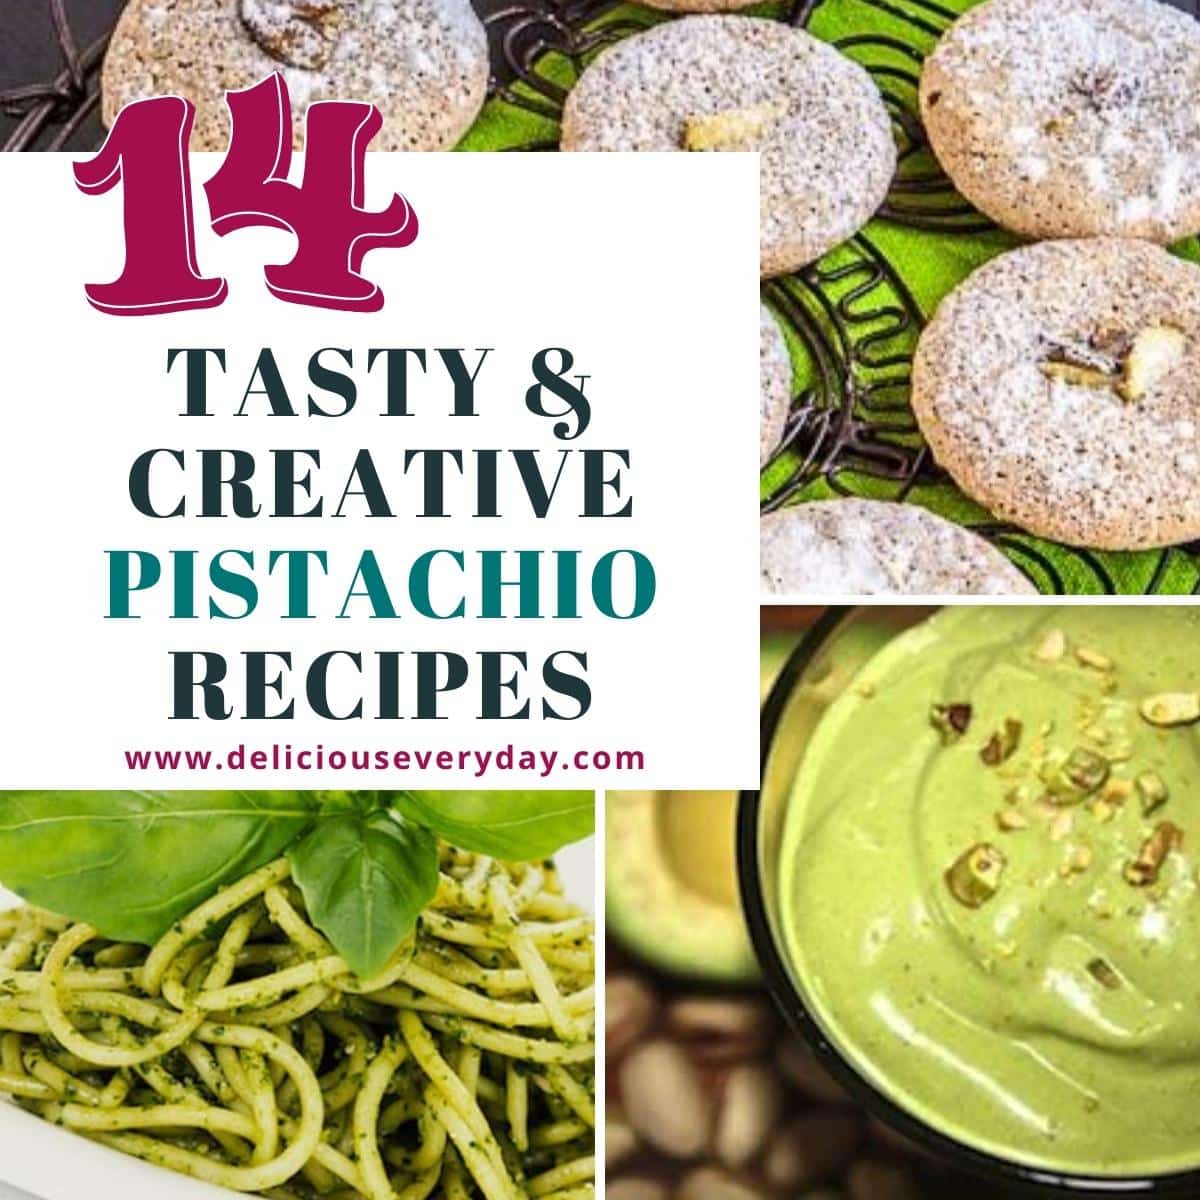 pistachio recipes